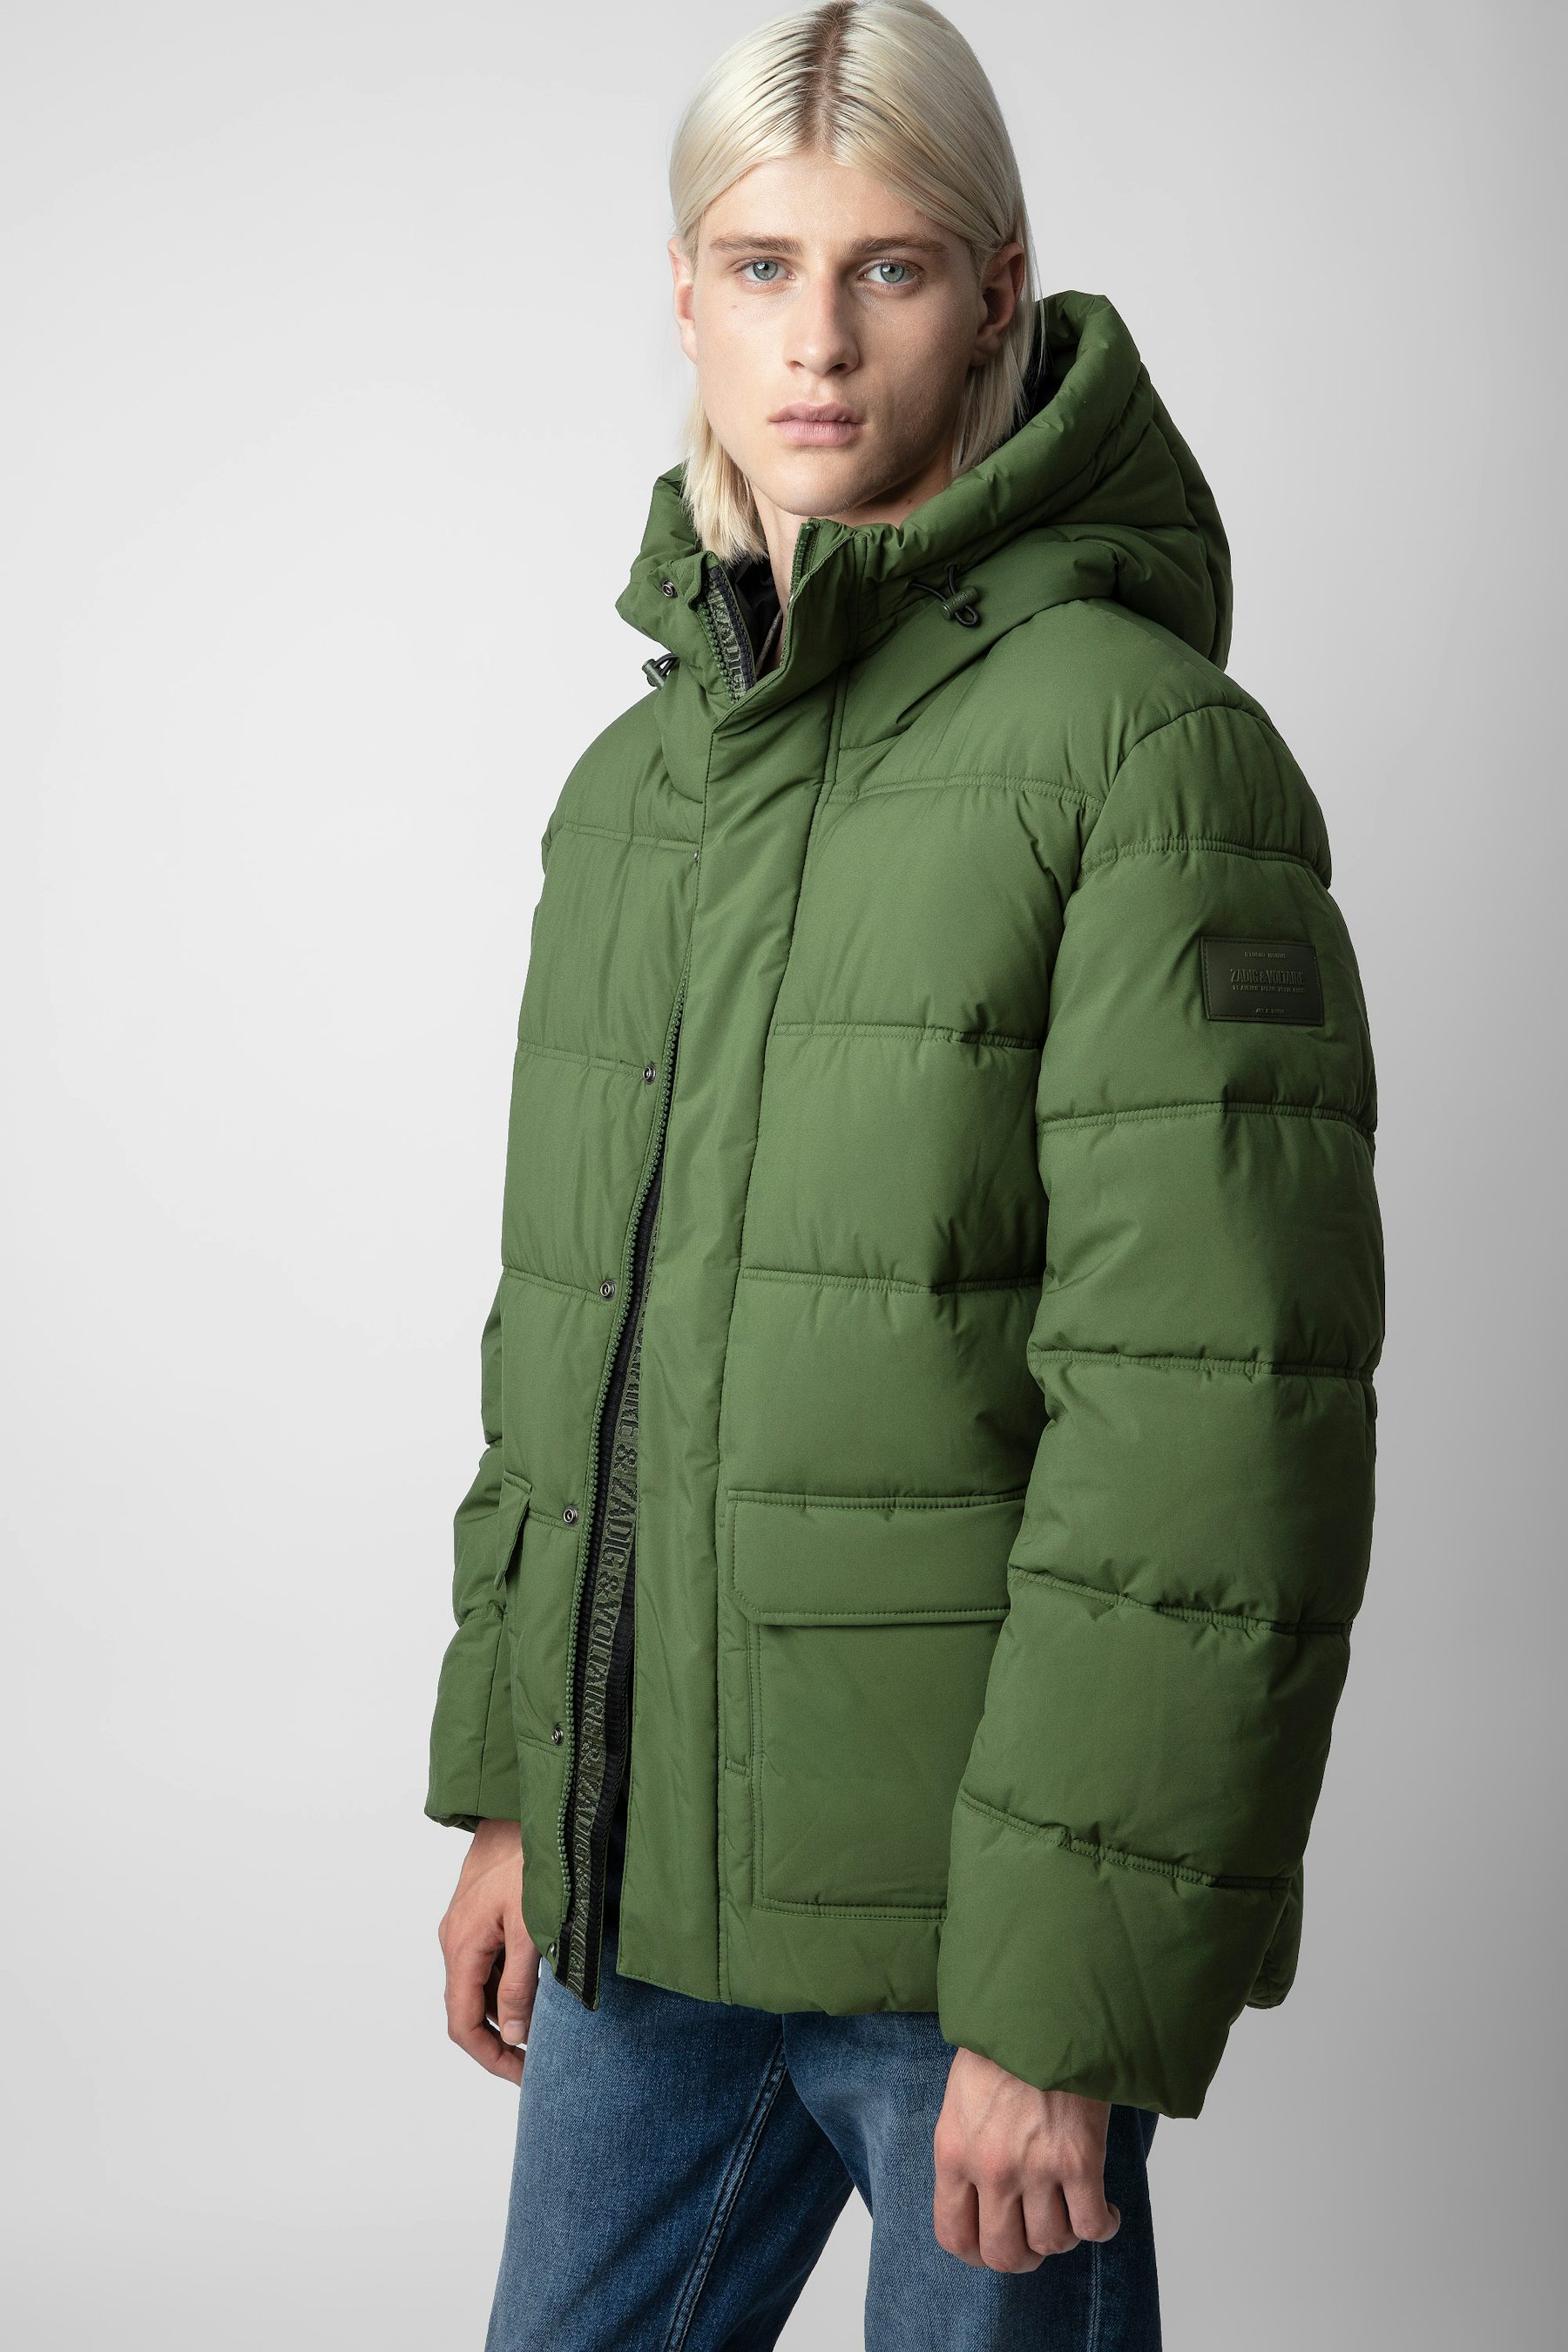 On-trend men’s coats, blazers, parkas, jackets | Zadig&Voltaire